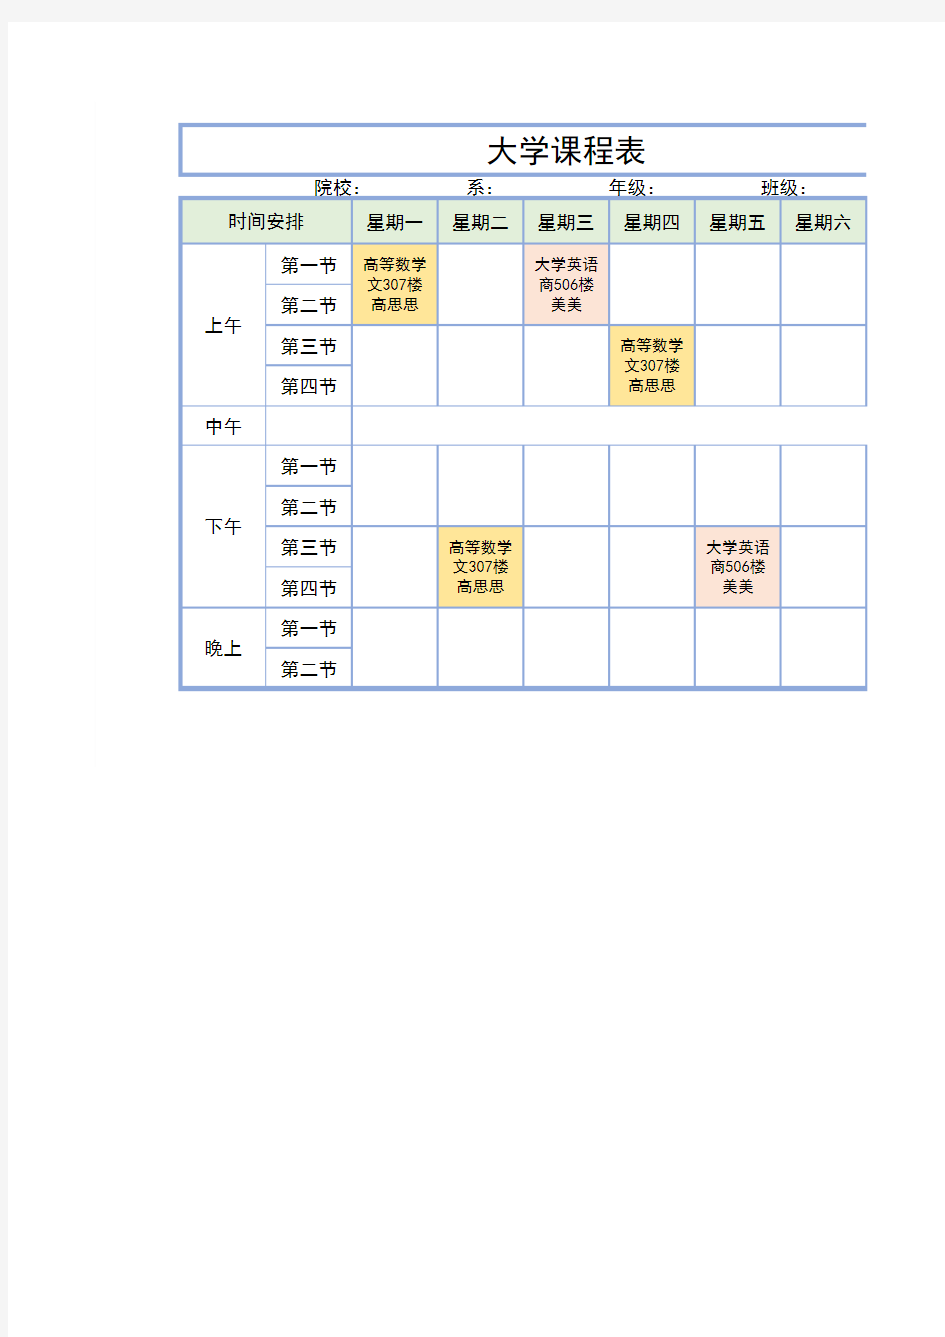 大学课程表模板 (1)